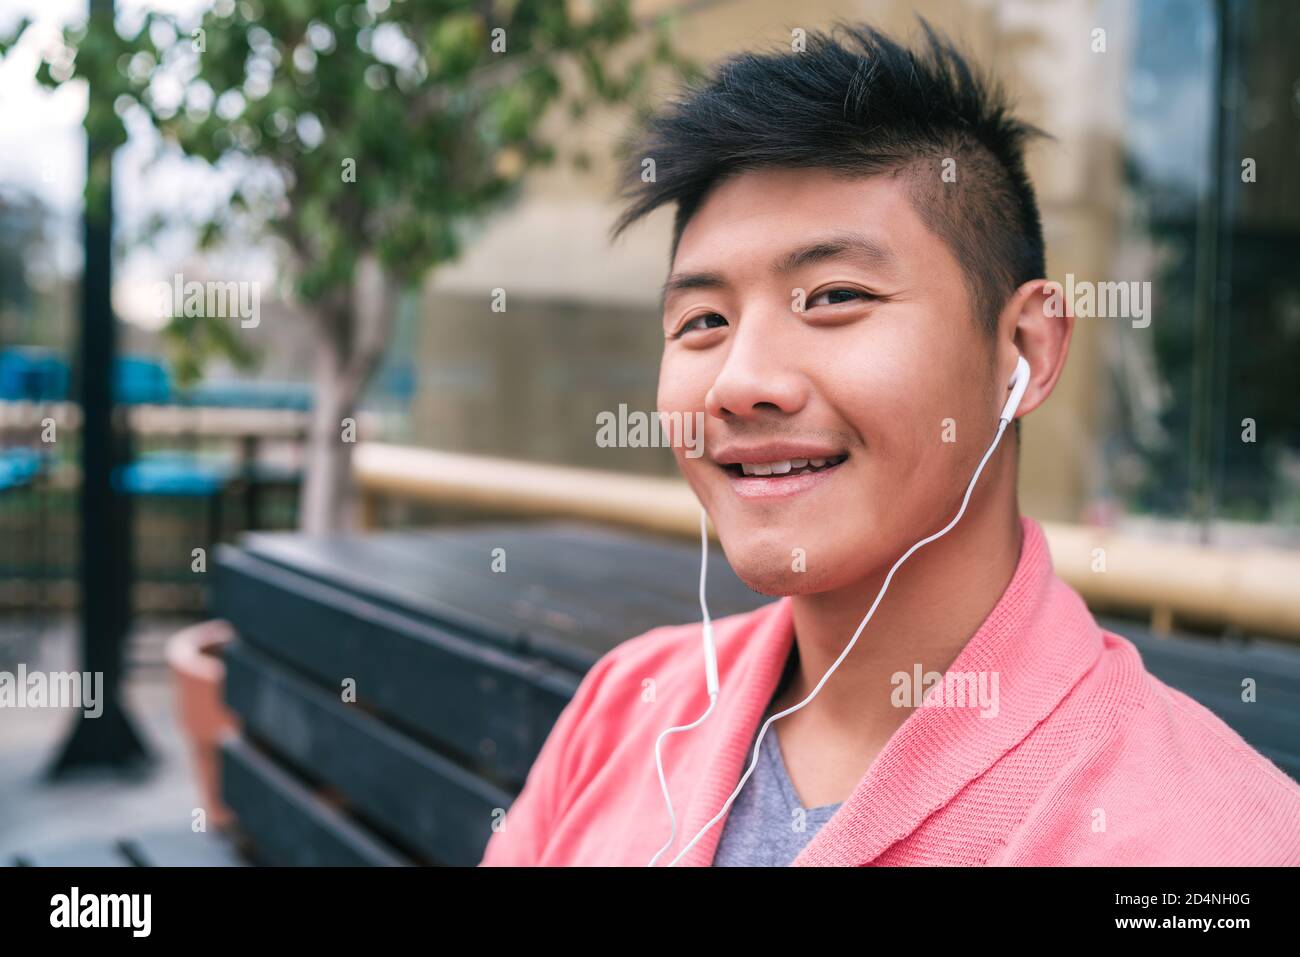 Porträt eines jungen asiatischen Mannes, der mit Kopfhörern Musik hört, während er auf einer Bank in einem Park sitzt. Stockfoto